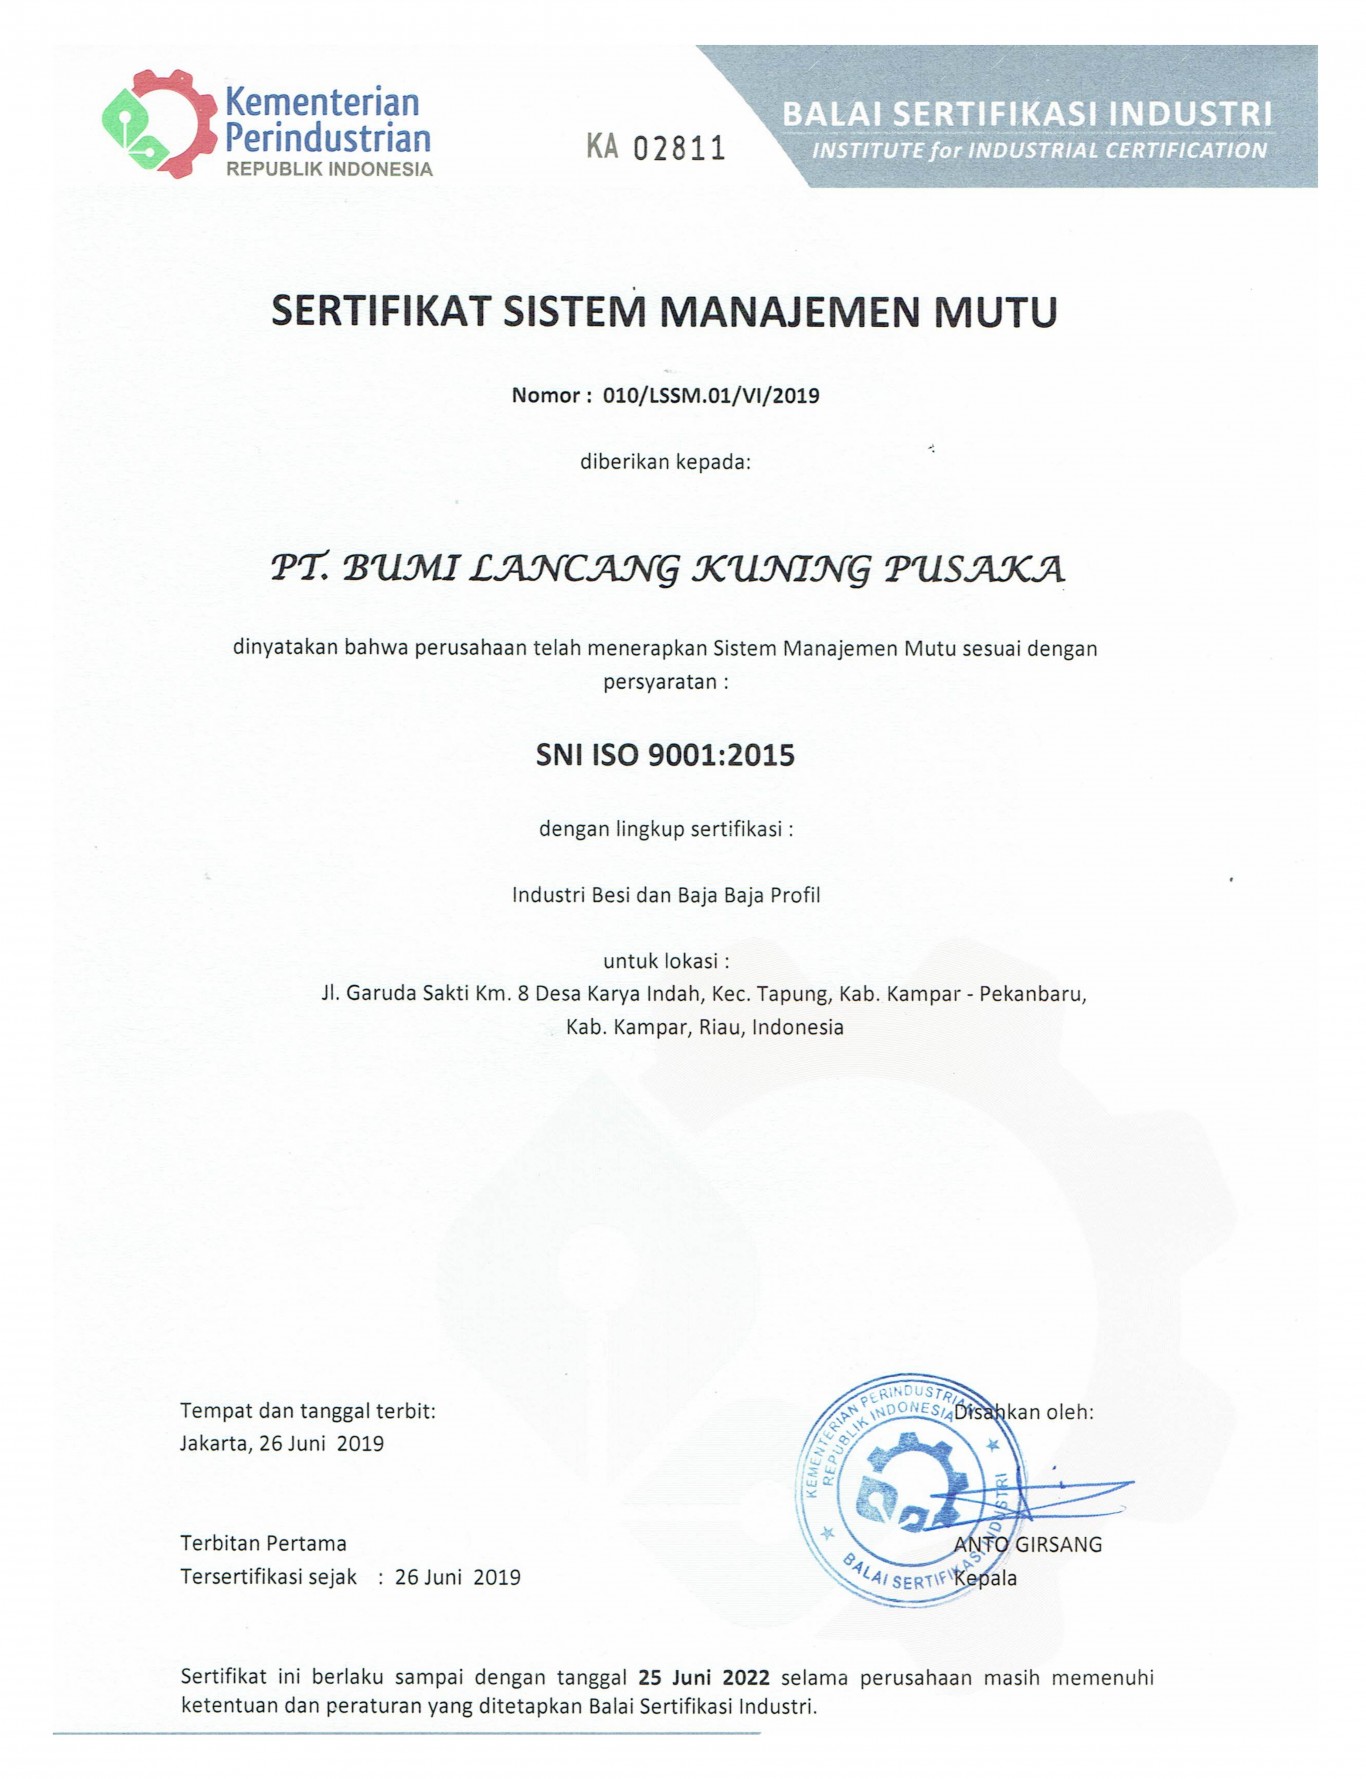 Sertifikat Sistem Manajemen Mutu ISO 9001 : 2015 PT. Bumi Lancang Kuning Pusaka dari BSI.